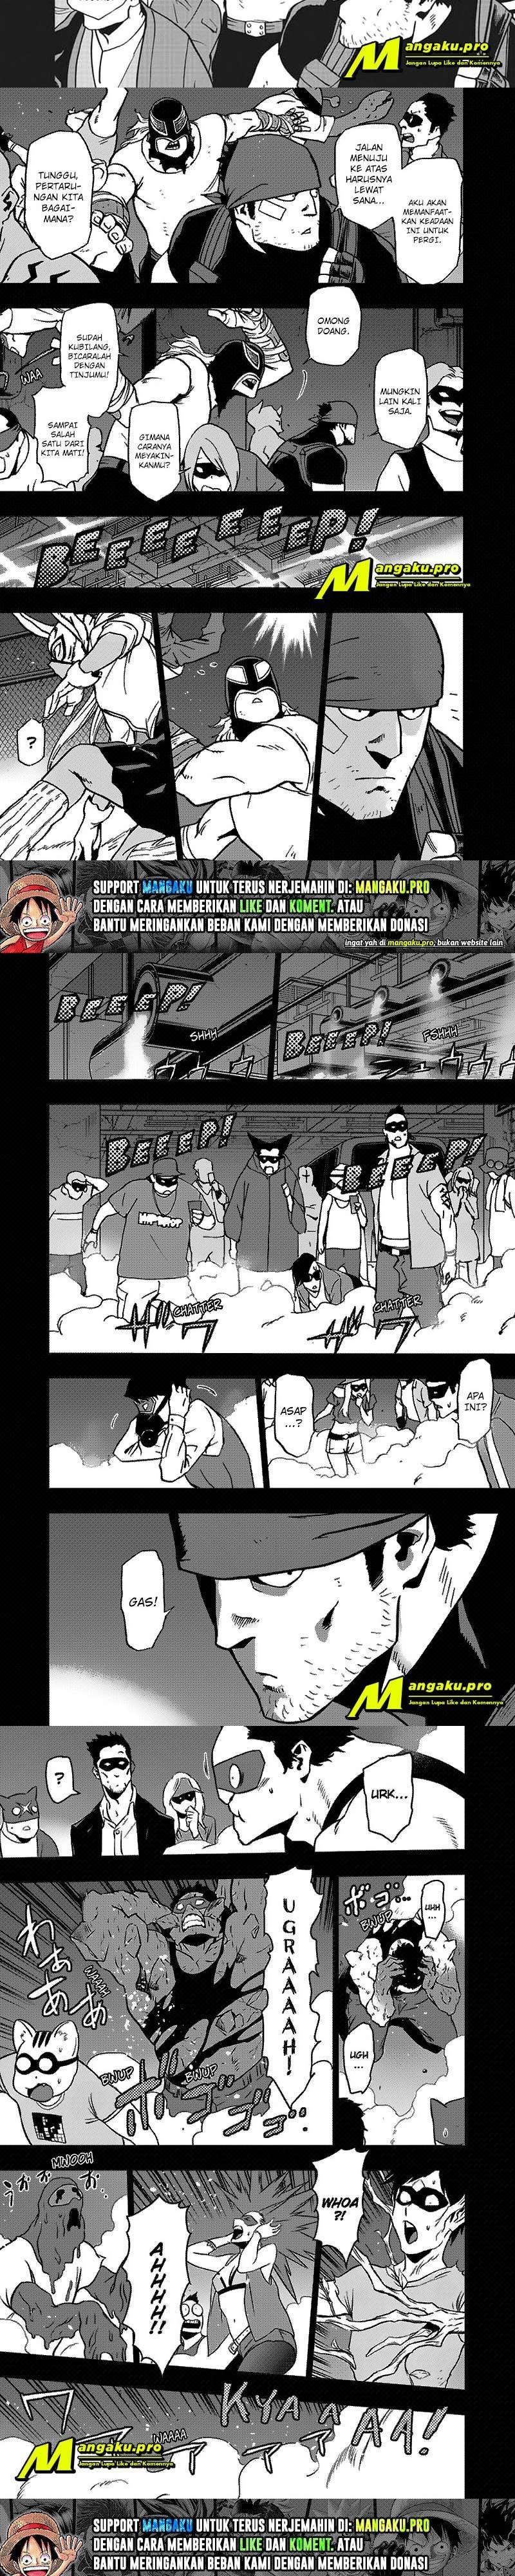 Vigilante: Boku no Hero Academia Illegals Chapter 89